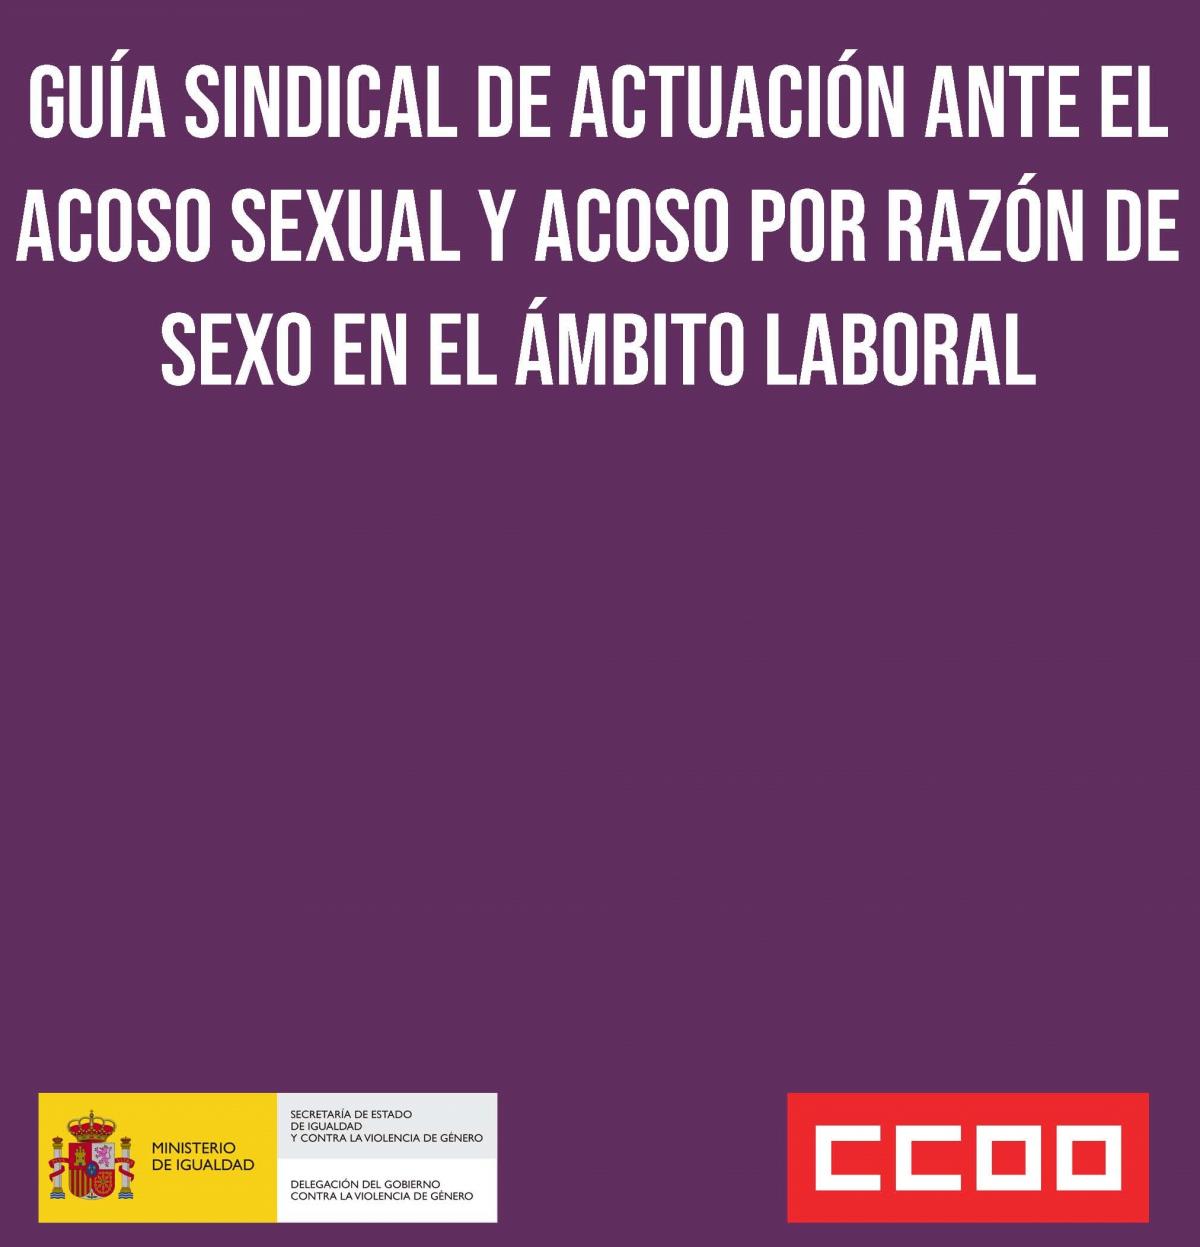 Detalle de la portada de la "Guía sindical de actuación ante el acoso sexual y acoso por razón de sexo en el ámbito laboral".